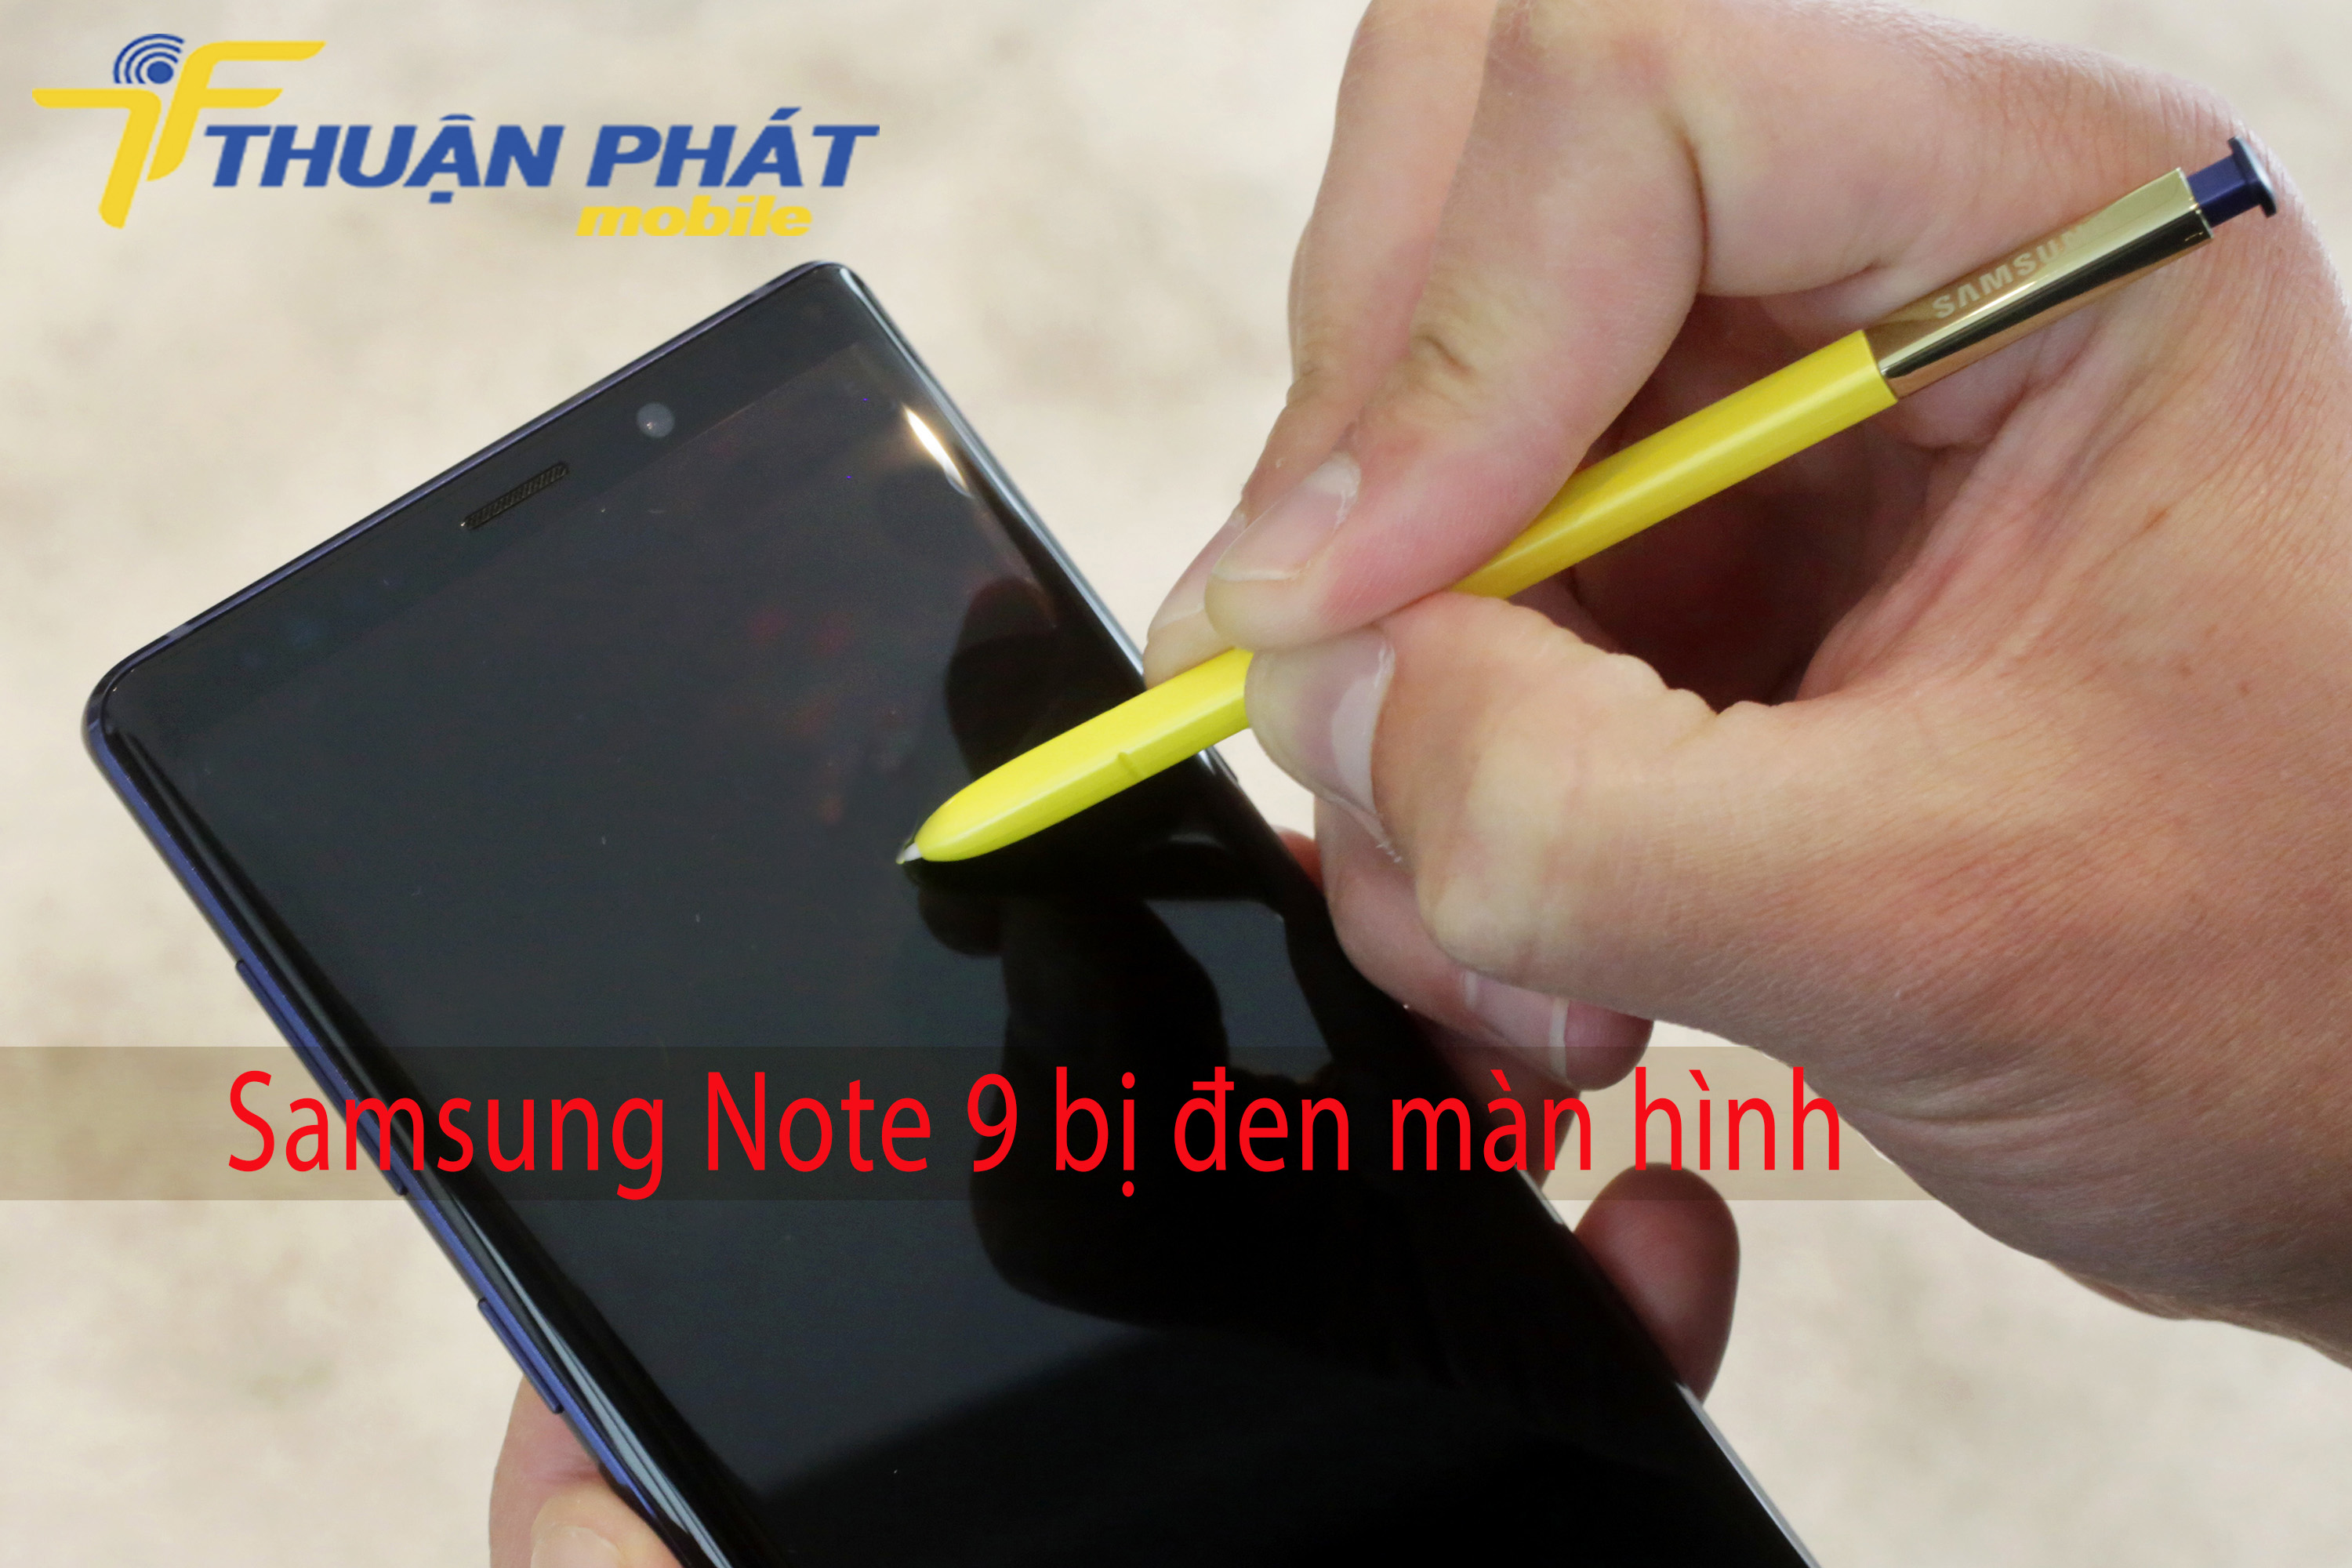 Samsung Note 9 bị đen màn hình